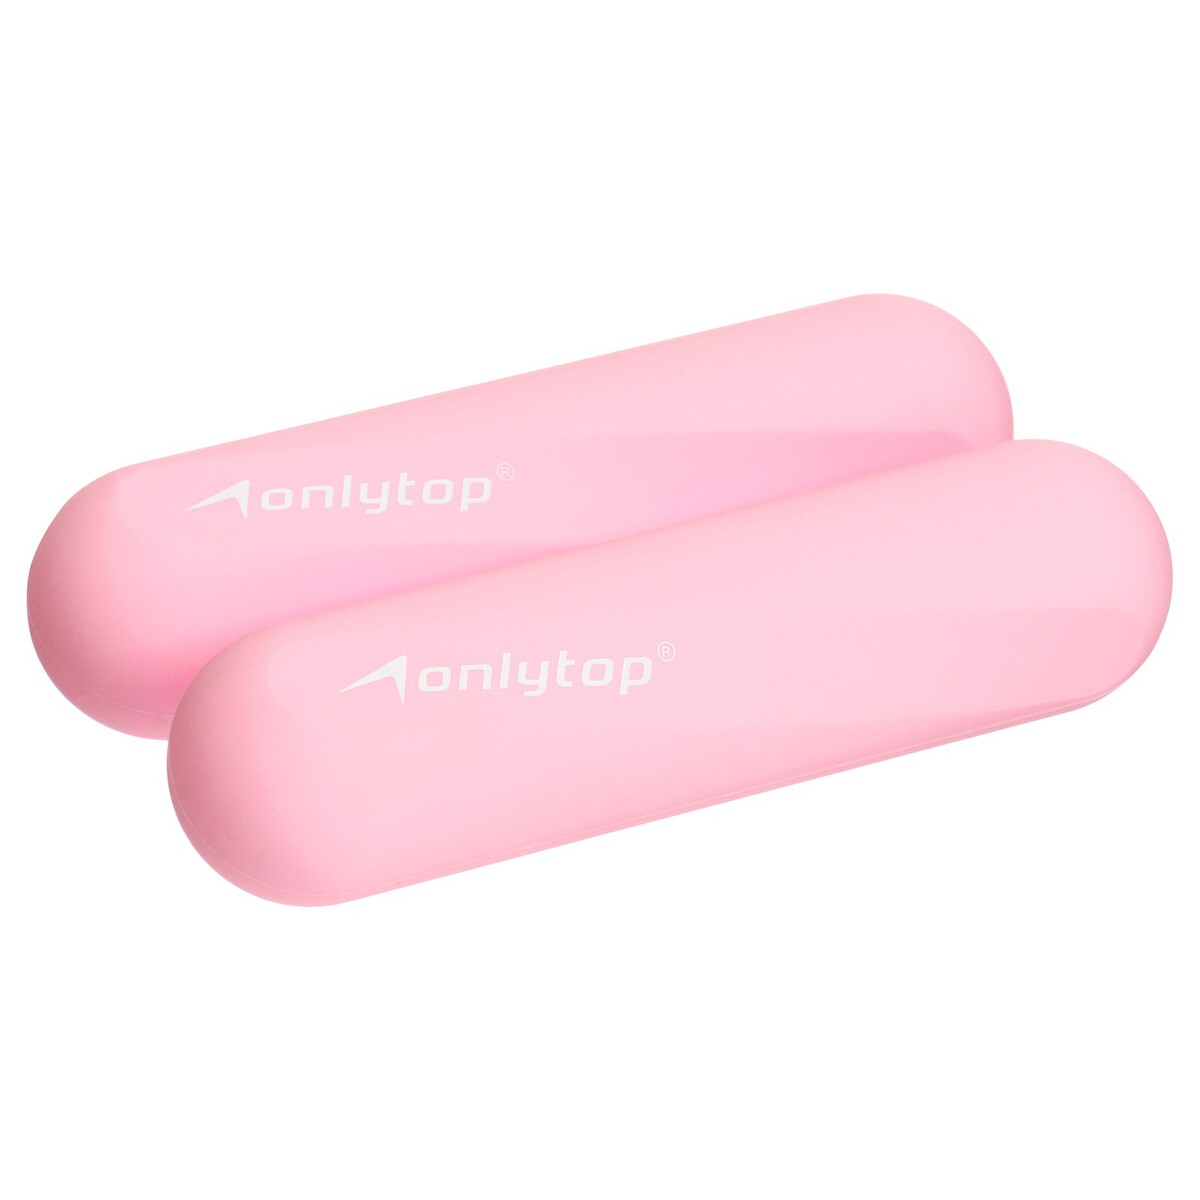 Гантели onlytop для универсального отягощения, 2 шт., 0,5 кг, цвет розовый гантели в уретане 12 кг live pro premium urethane dumbbells lp8000 12